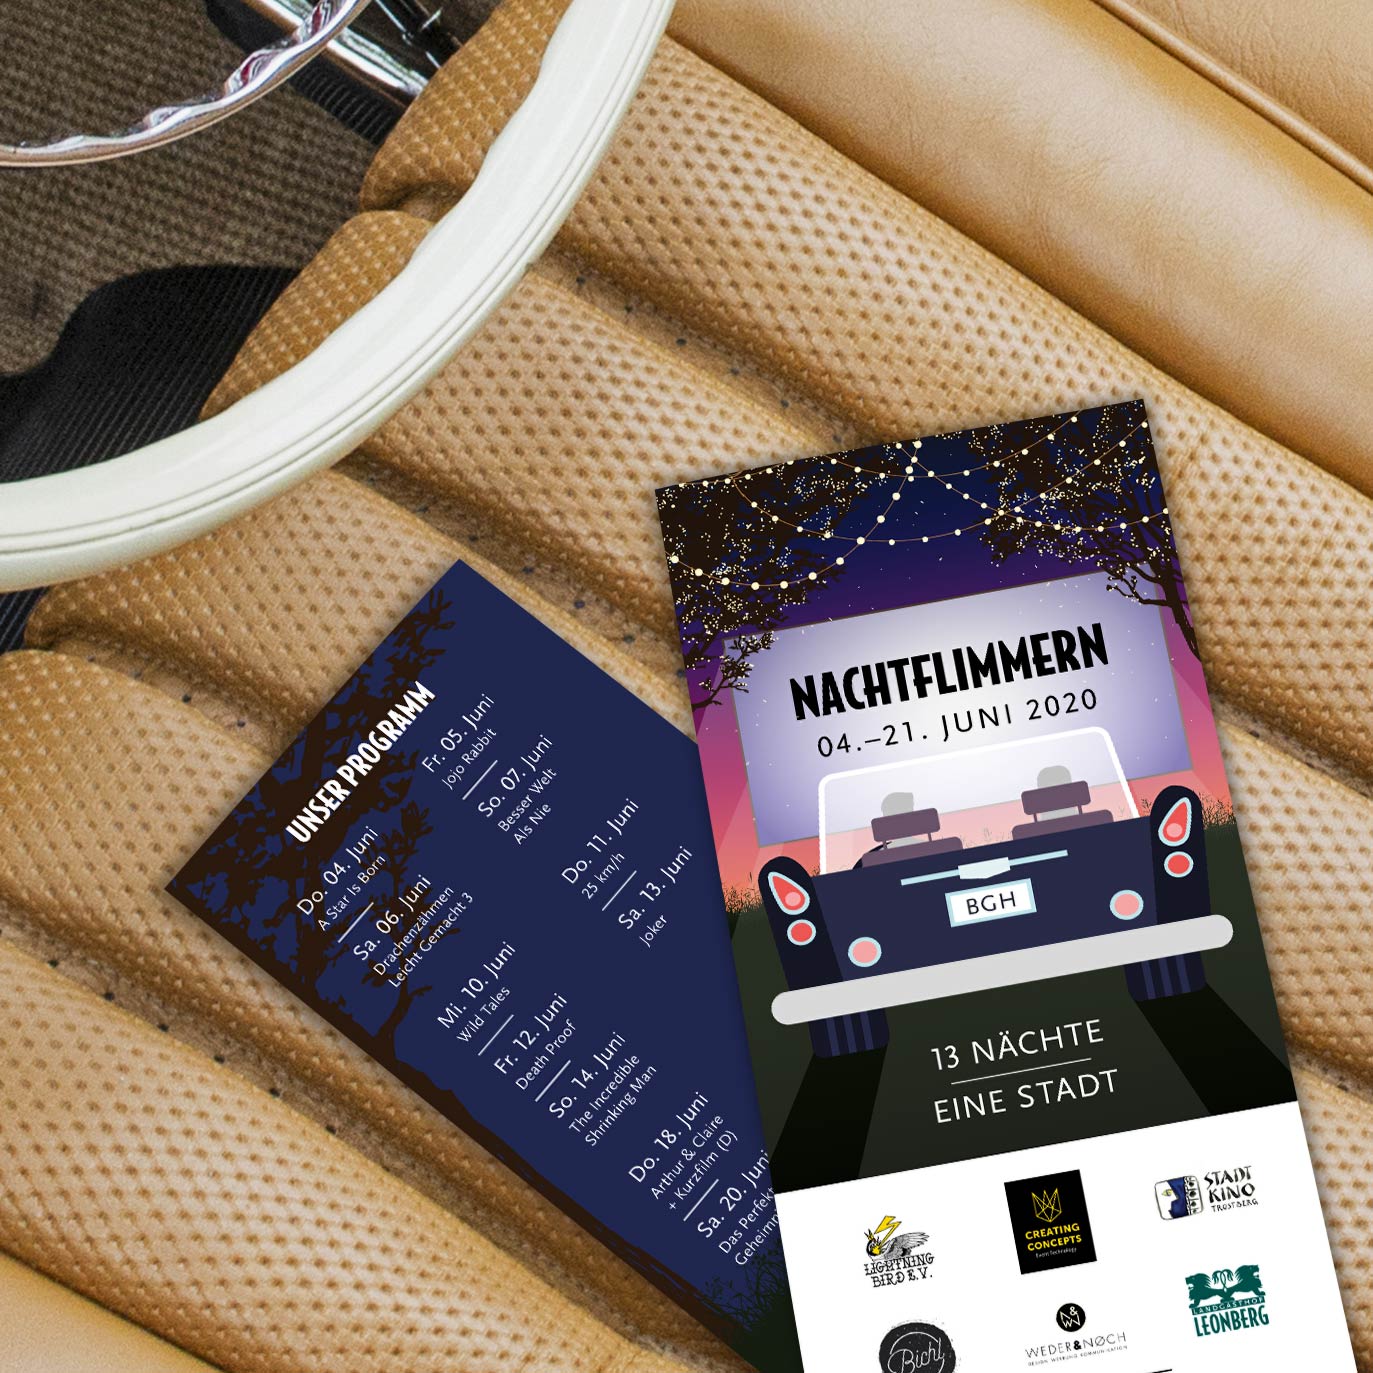 Nachtflimmern - Autokino in Burghausen Programm Flyer